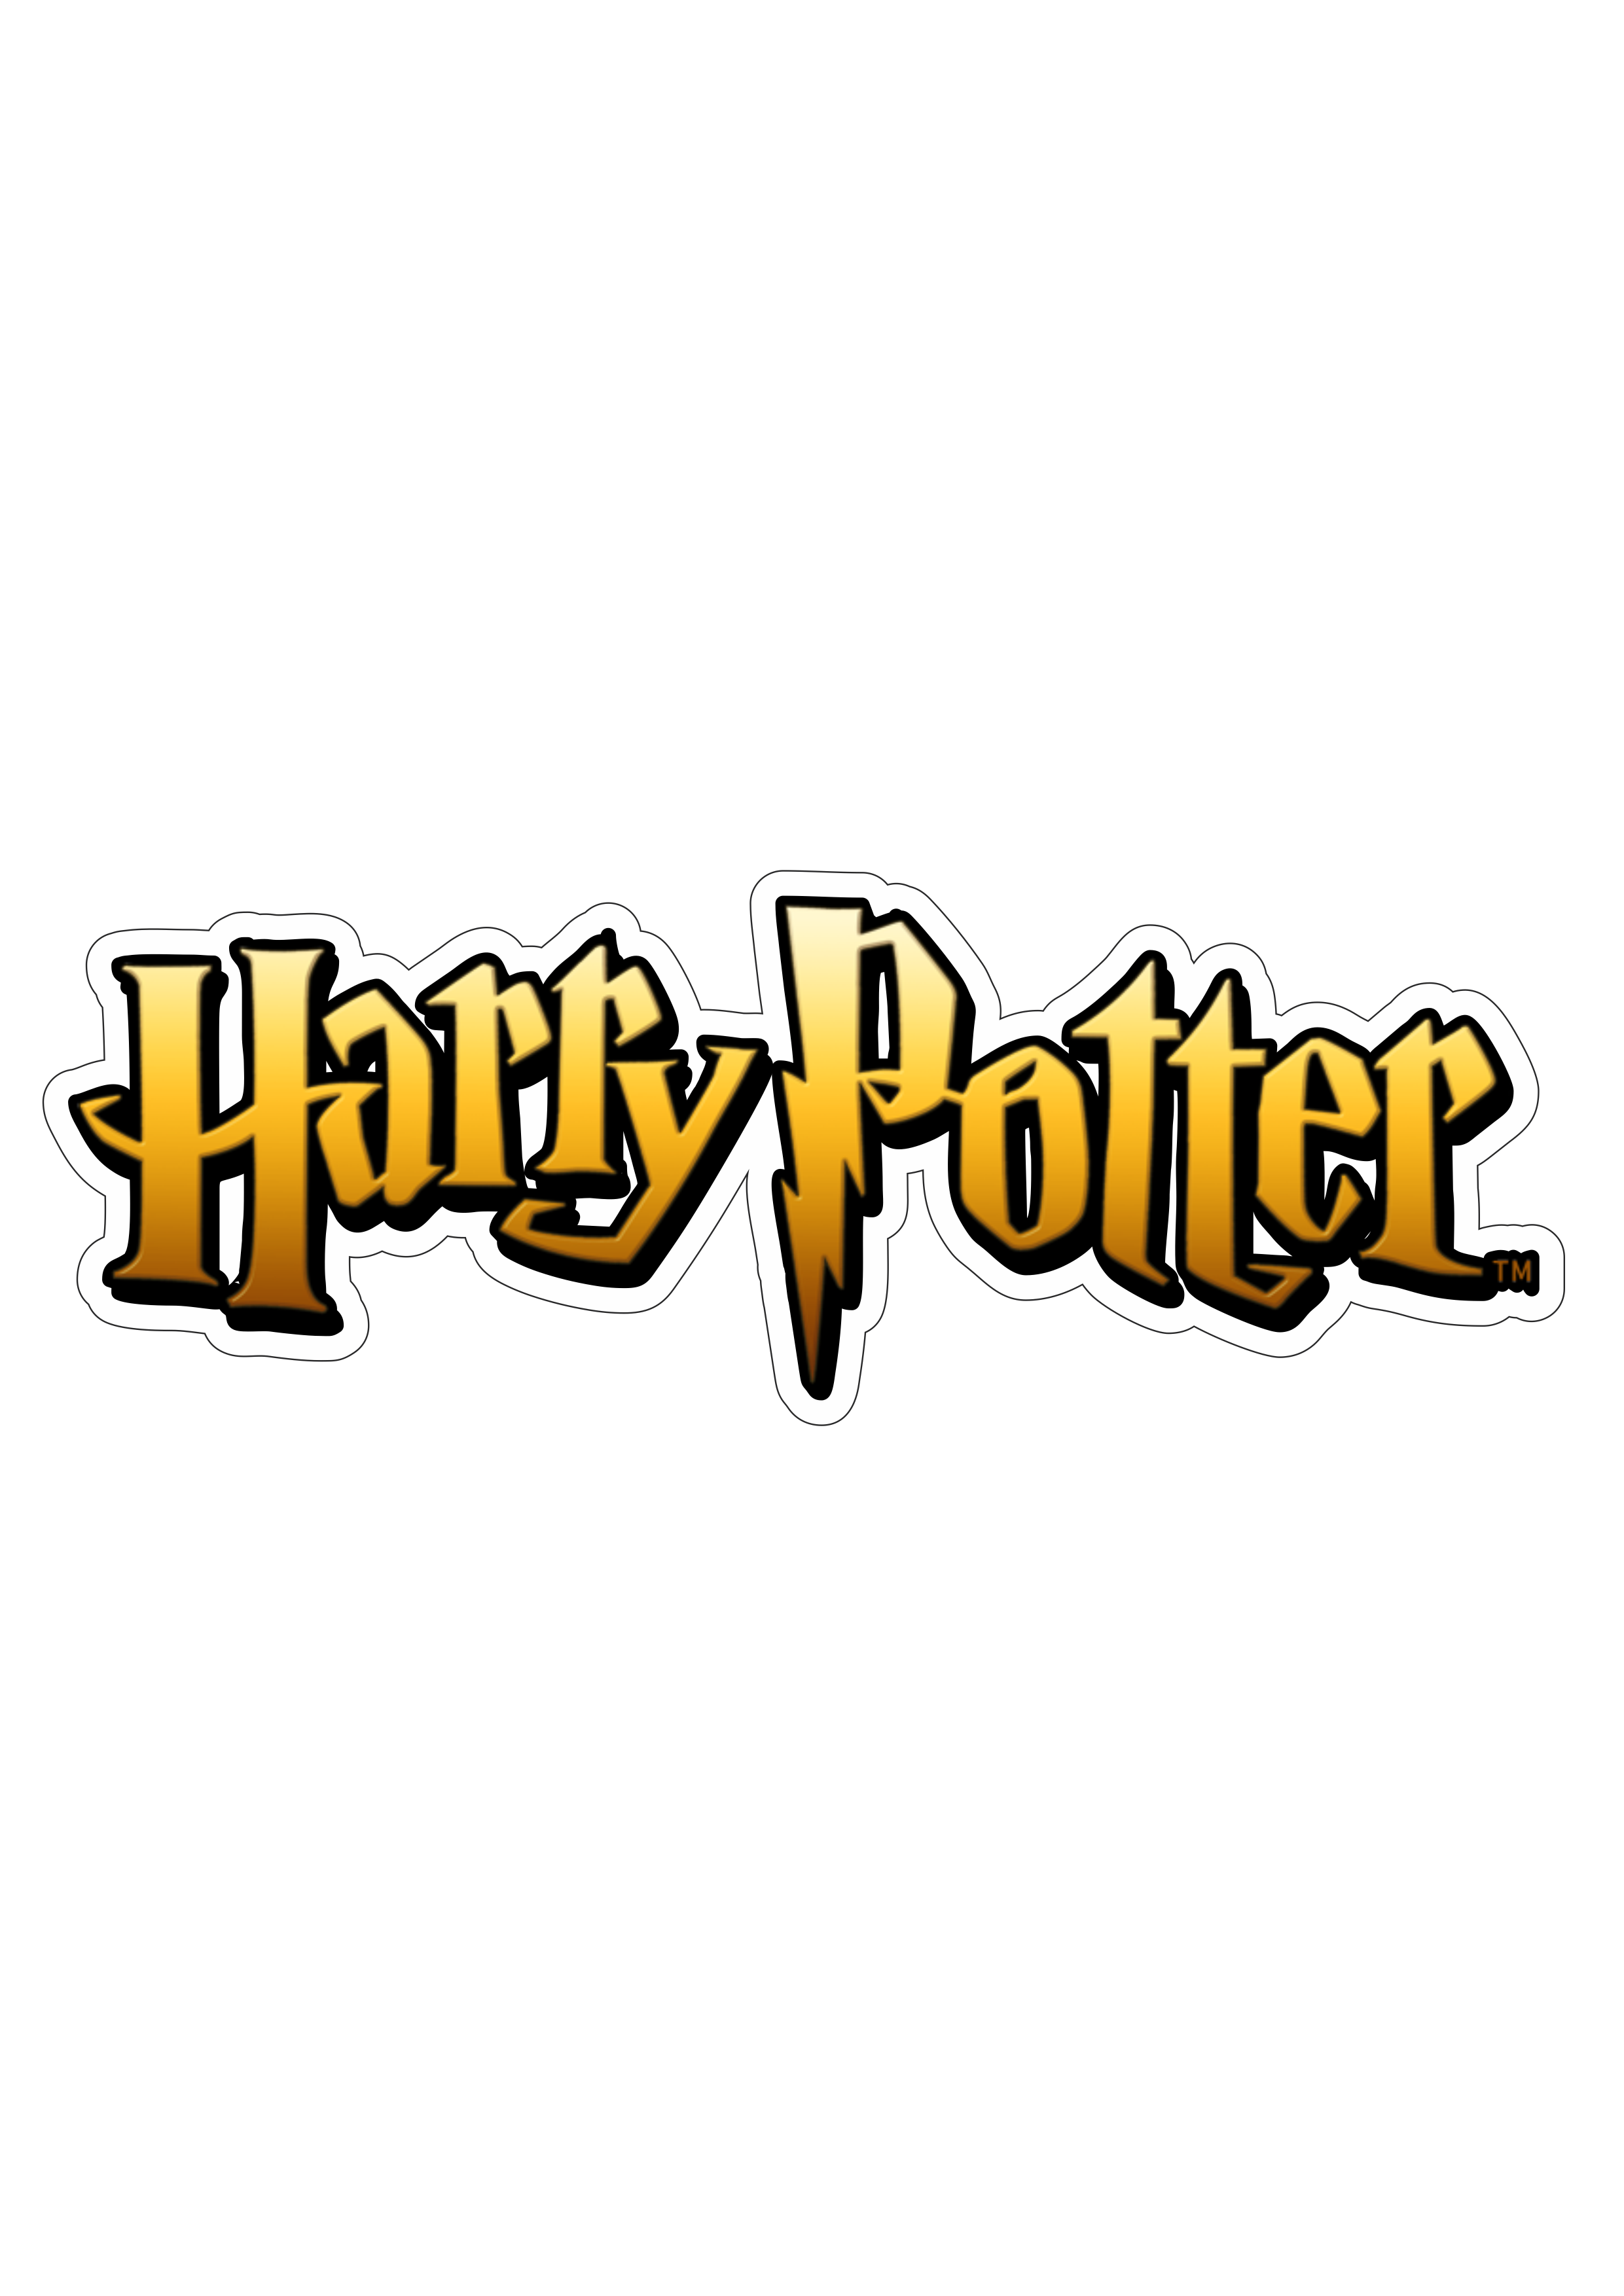 Harry Potter letreiro logo fundo transparente png